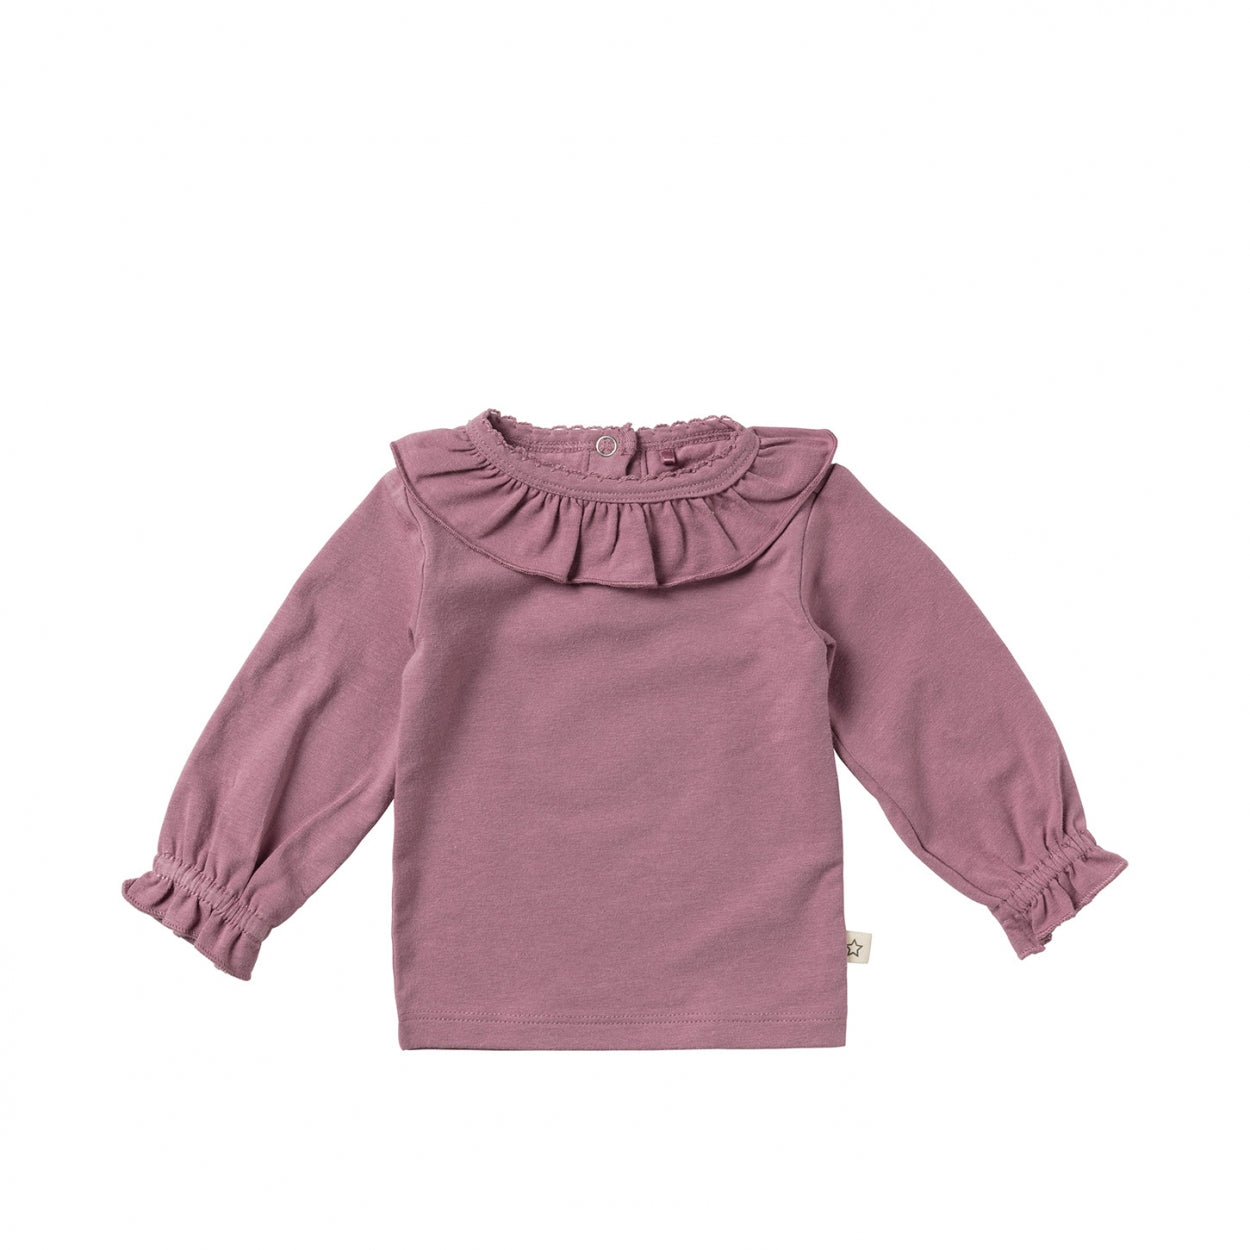 Meisjes Longsleeve collar Solid | Nyna van Your Wishes Newborn in de kleur Lavender in maat 68.